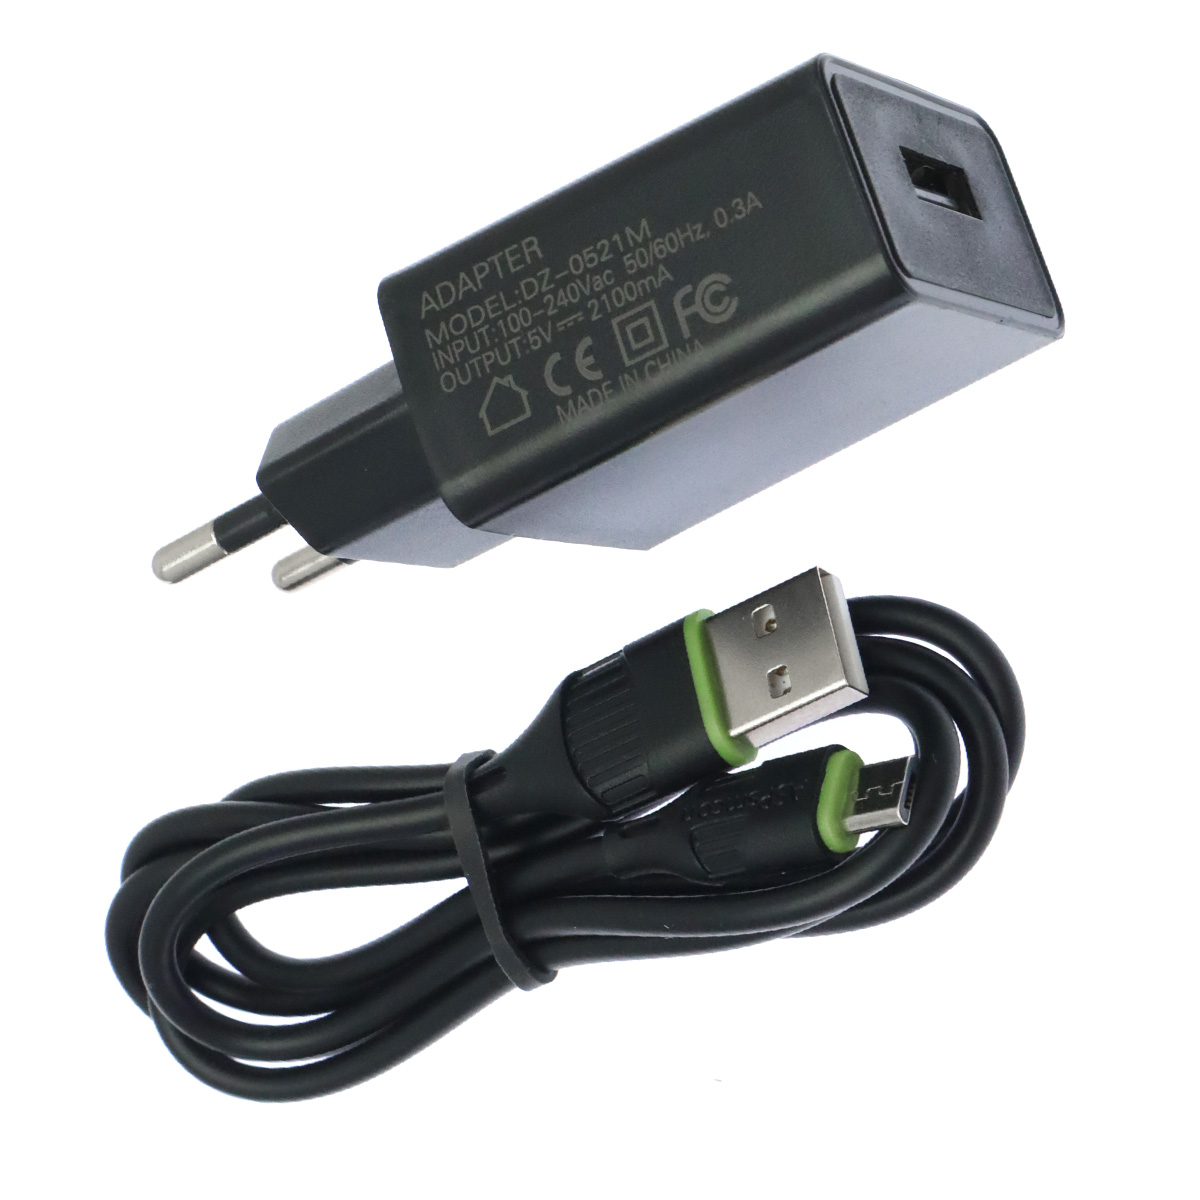 СЗУ (Сетевое зарядное устройство) ASPsmcon A001 V8 с кабелем Micro USB, 2.1A, 1 USB, длина 1 метр, цвет черный